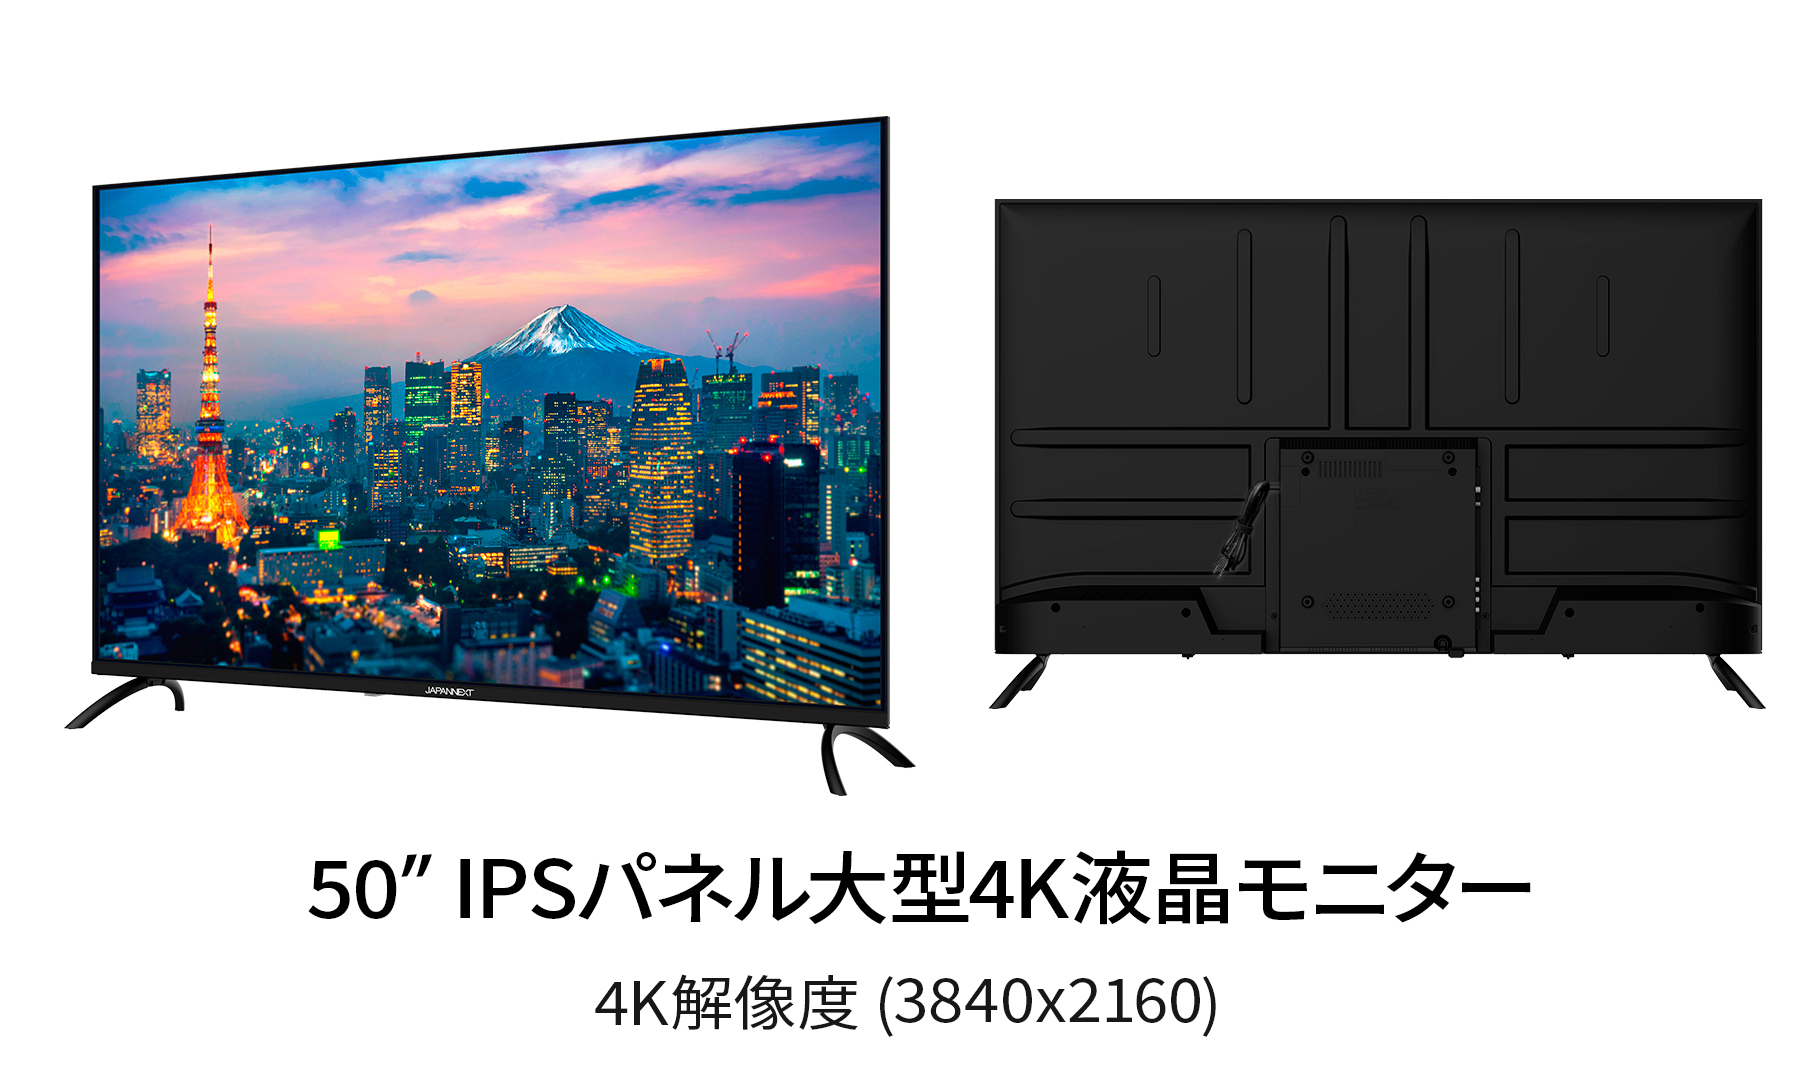 【5年保証モデル】JAPANNEXT 50インチ IPSパネル搭載 大型4K液晶モニター JN-IPS50UHDR-U-H5 HDMI HDR  ビデオ/音声入力端子 オプティカル端子 ジャパンネクスト